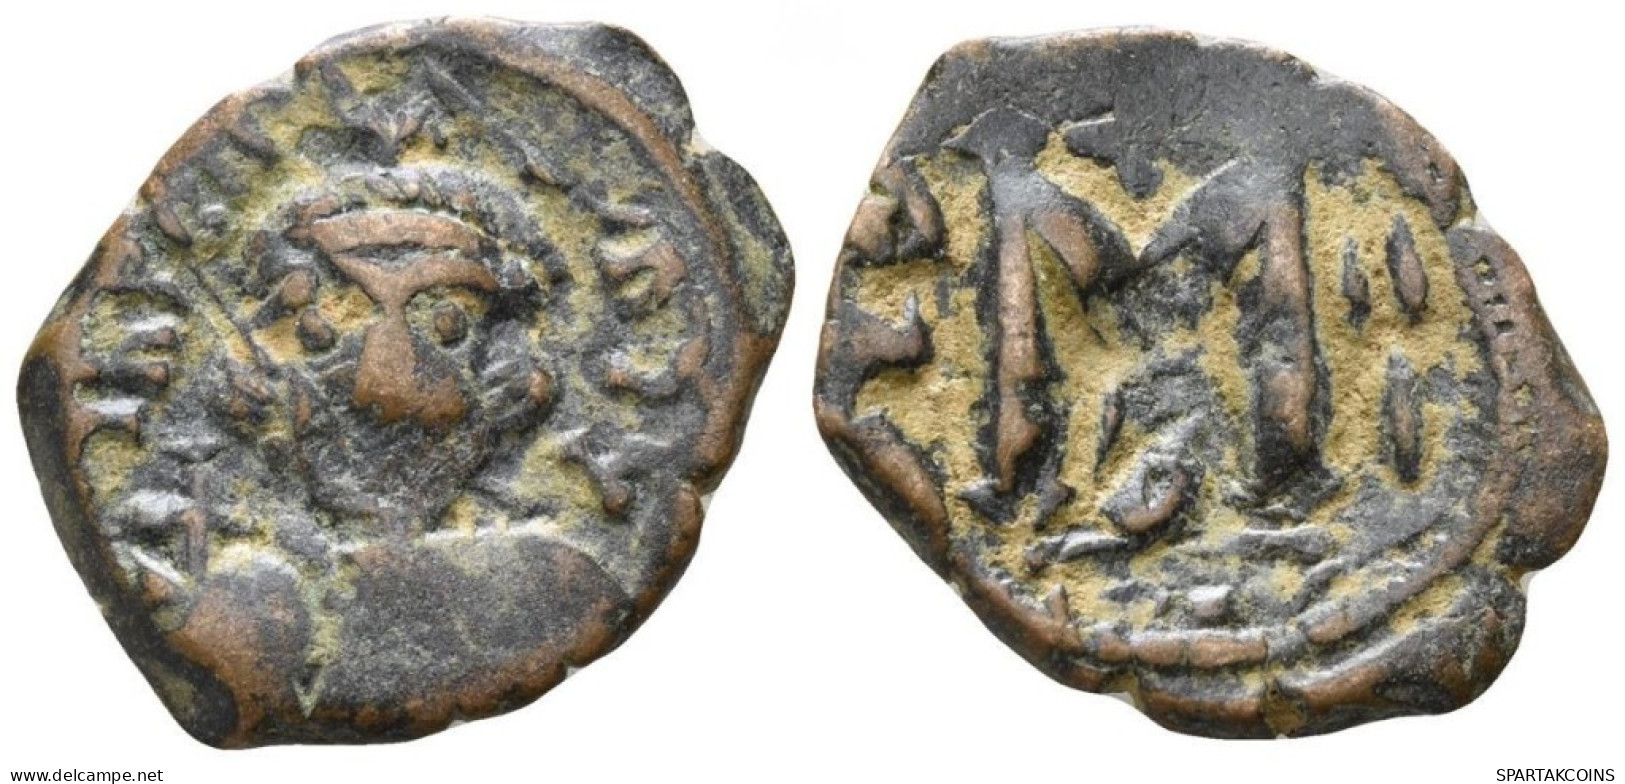 Constans II Follis Cross Globus 5.18g/24mm #ANT1058.8.E.A - Byzantinische Münzen